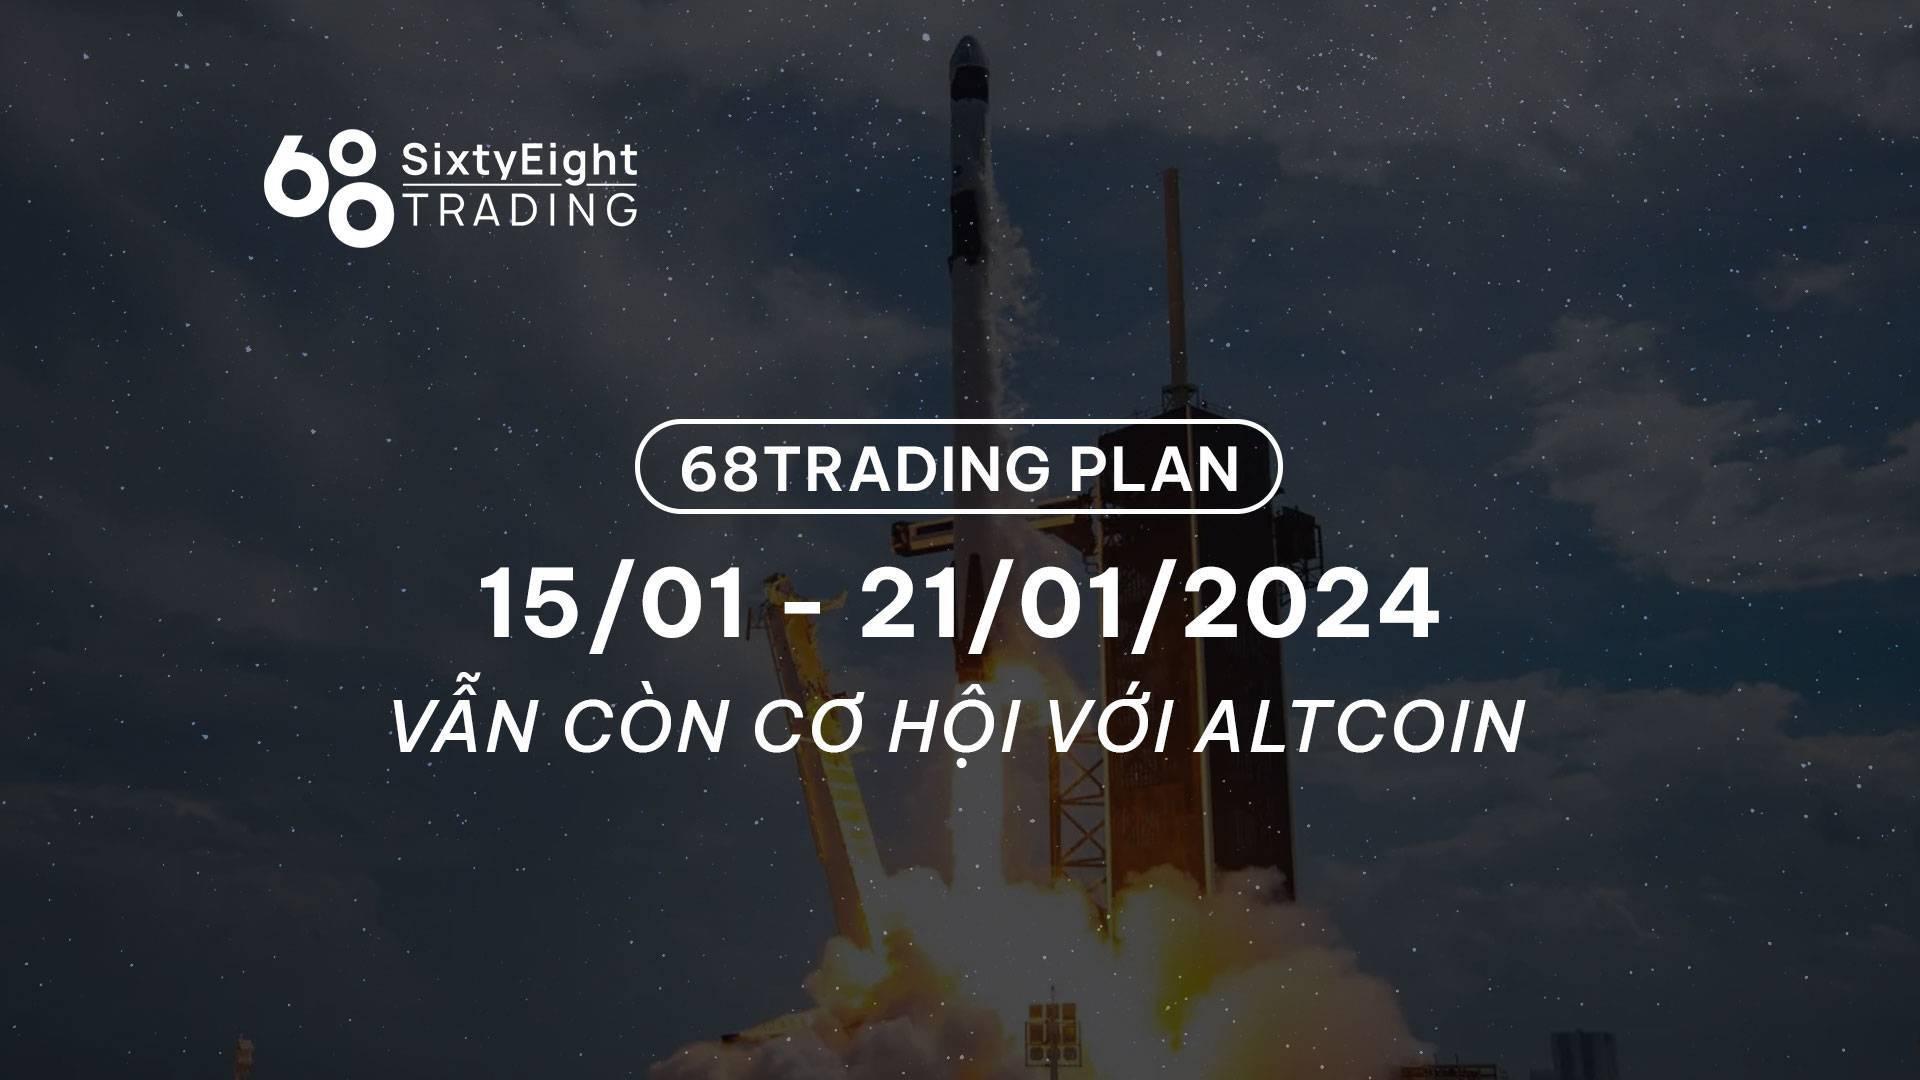 68-trading-plan-1501-21012024-van-con-co-hoi-voi-altcoin